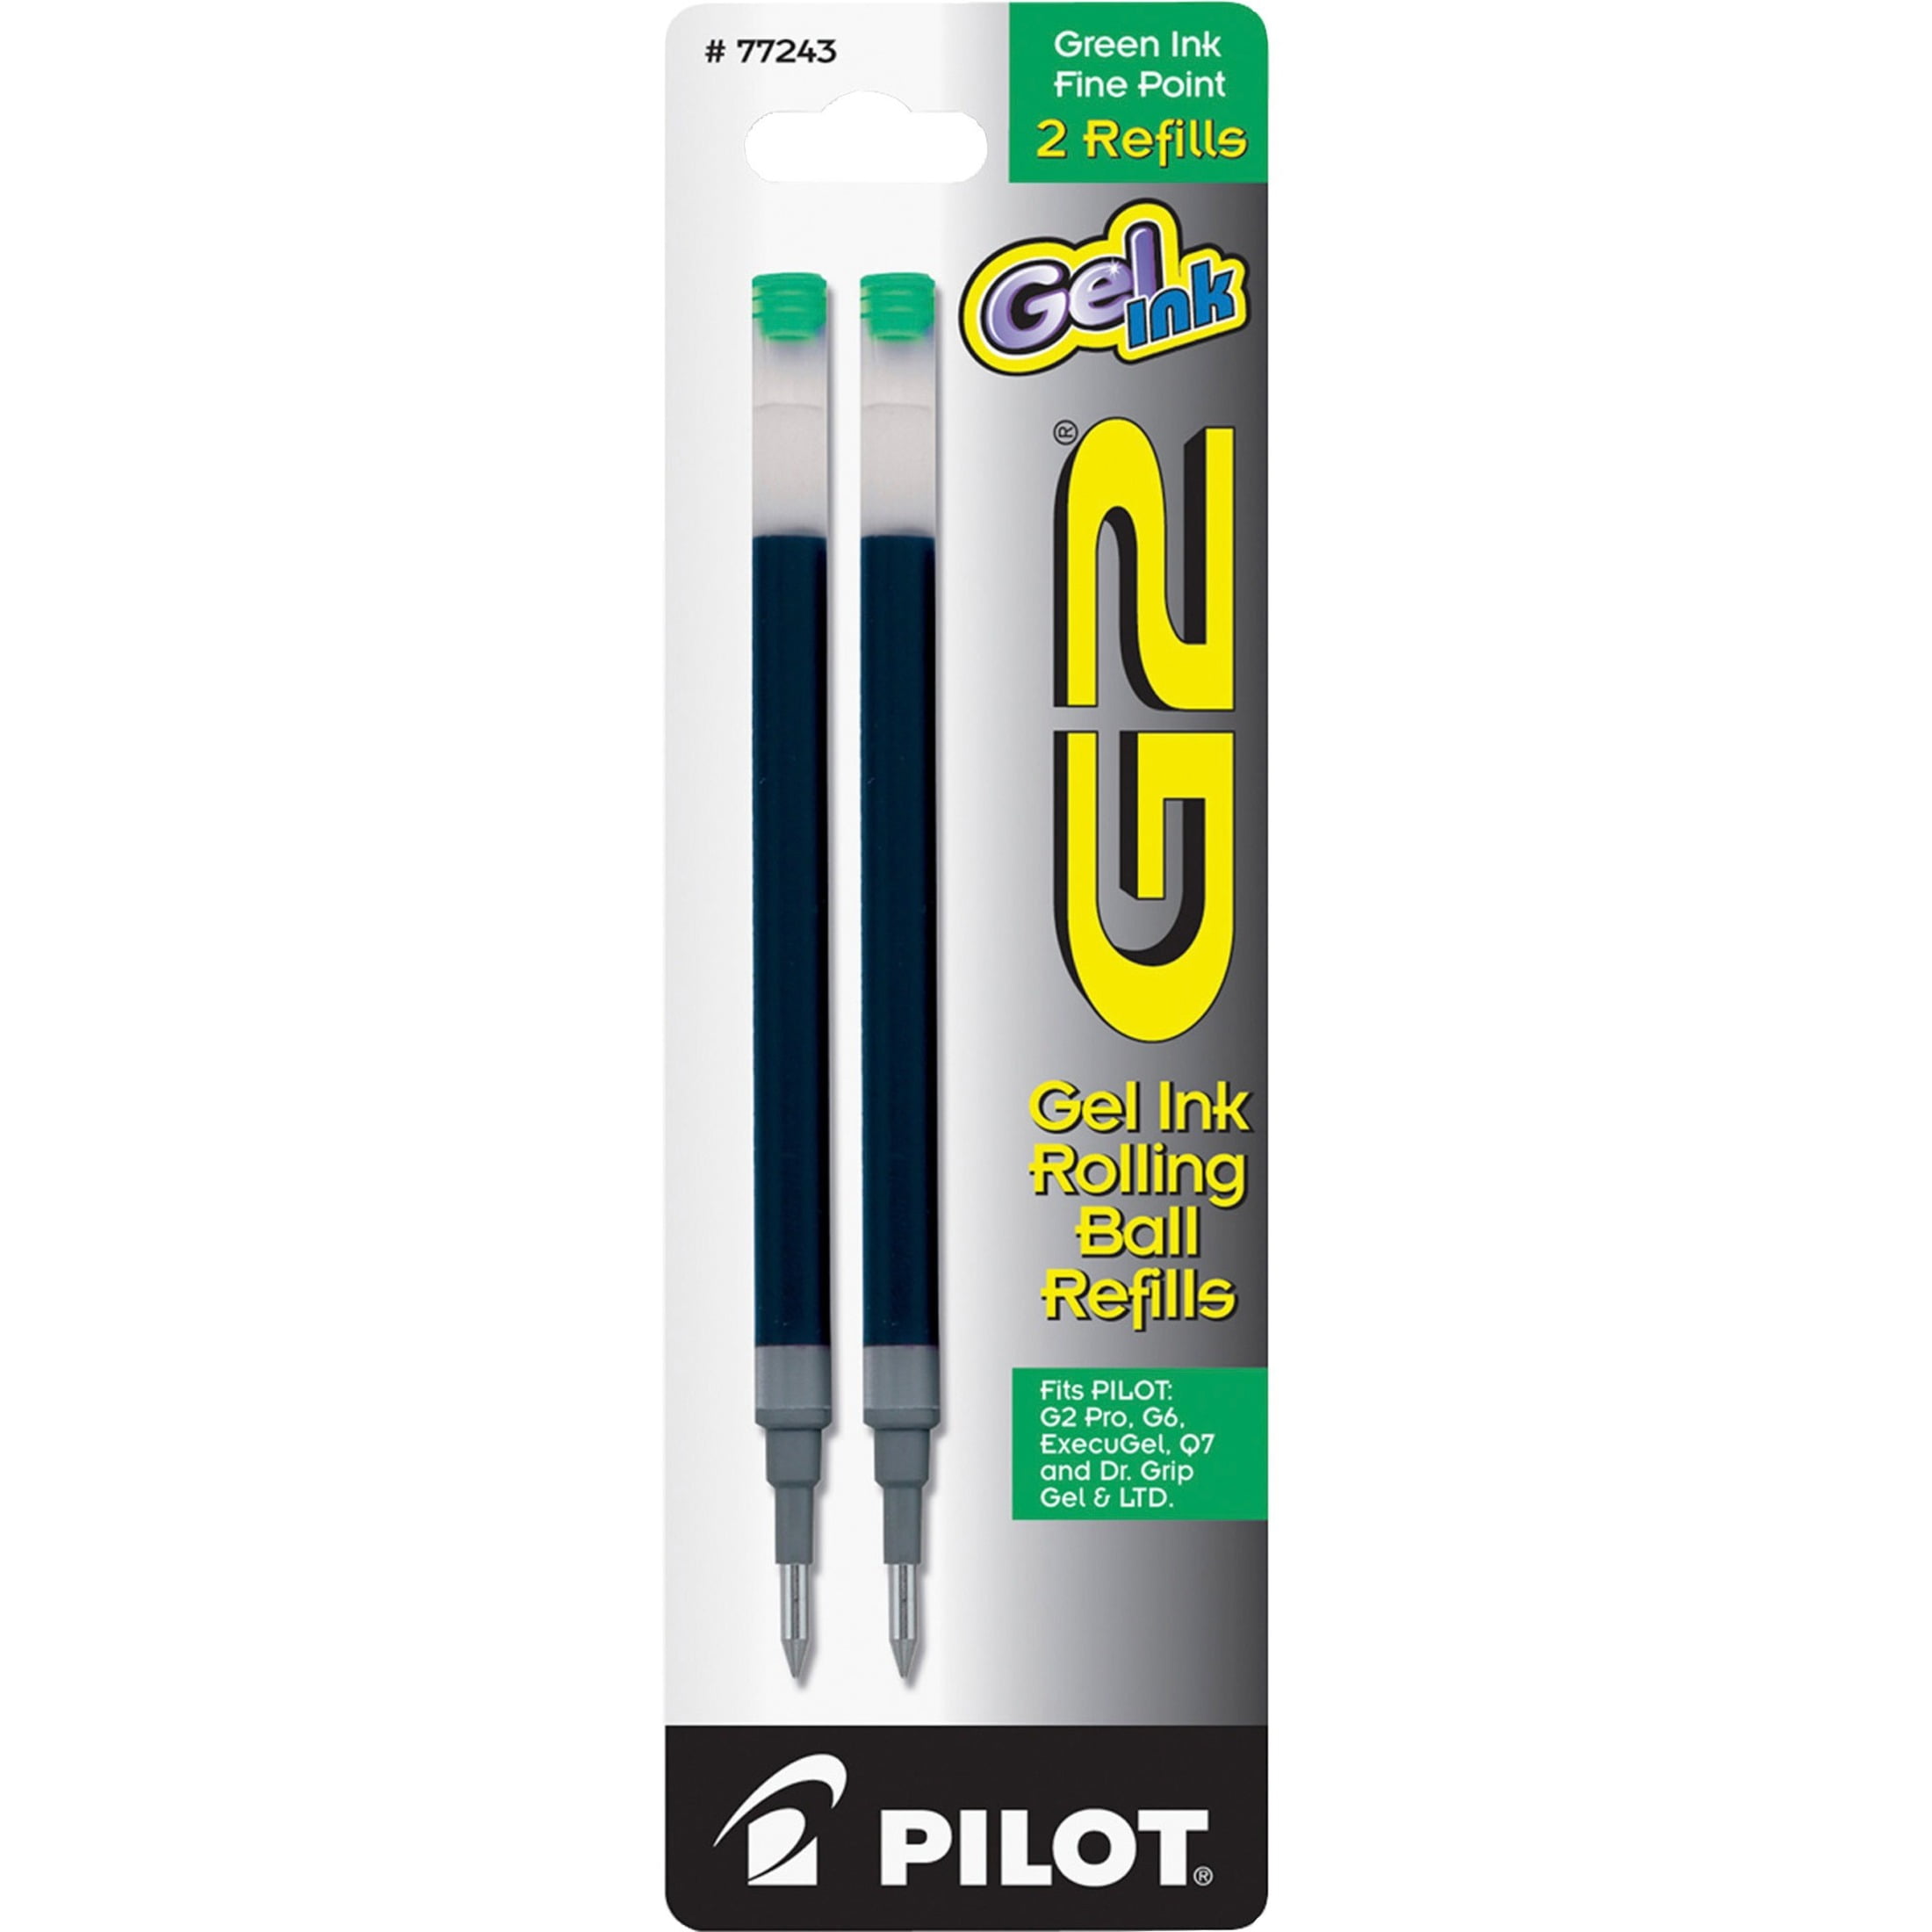 Pilot Refill for G2 Gel Dr Grip Gel/Ltd ExecuGel G6 Q7 Fine Tip Black 2/Pack 